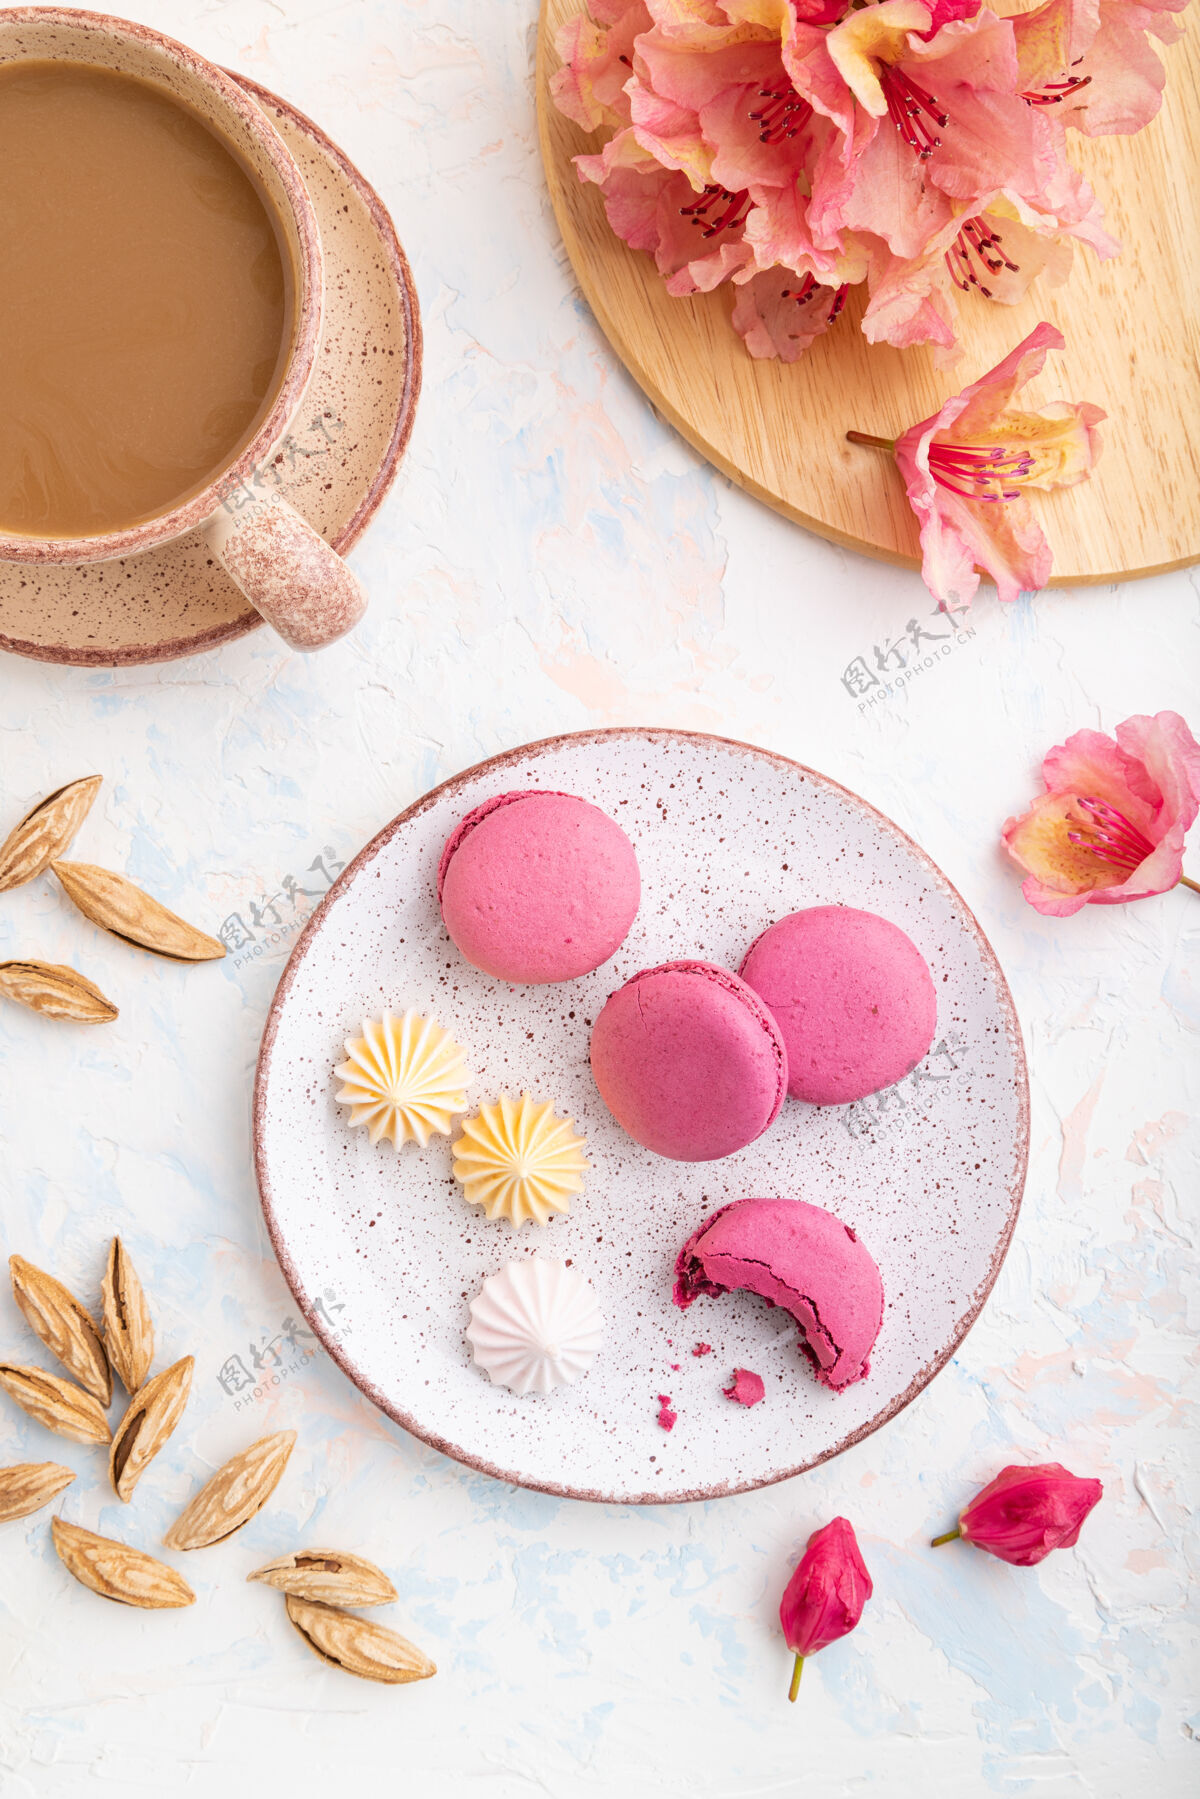 传统紫色的马卡龙或马卡龙蛋糕配一杯咖啡 背景是白色的混凝土 上面装饰着花朵蛋白酥皮麦卡龙杯子